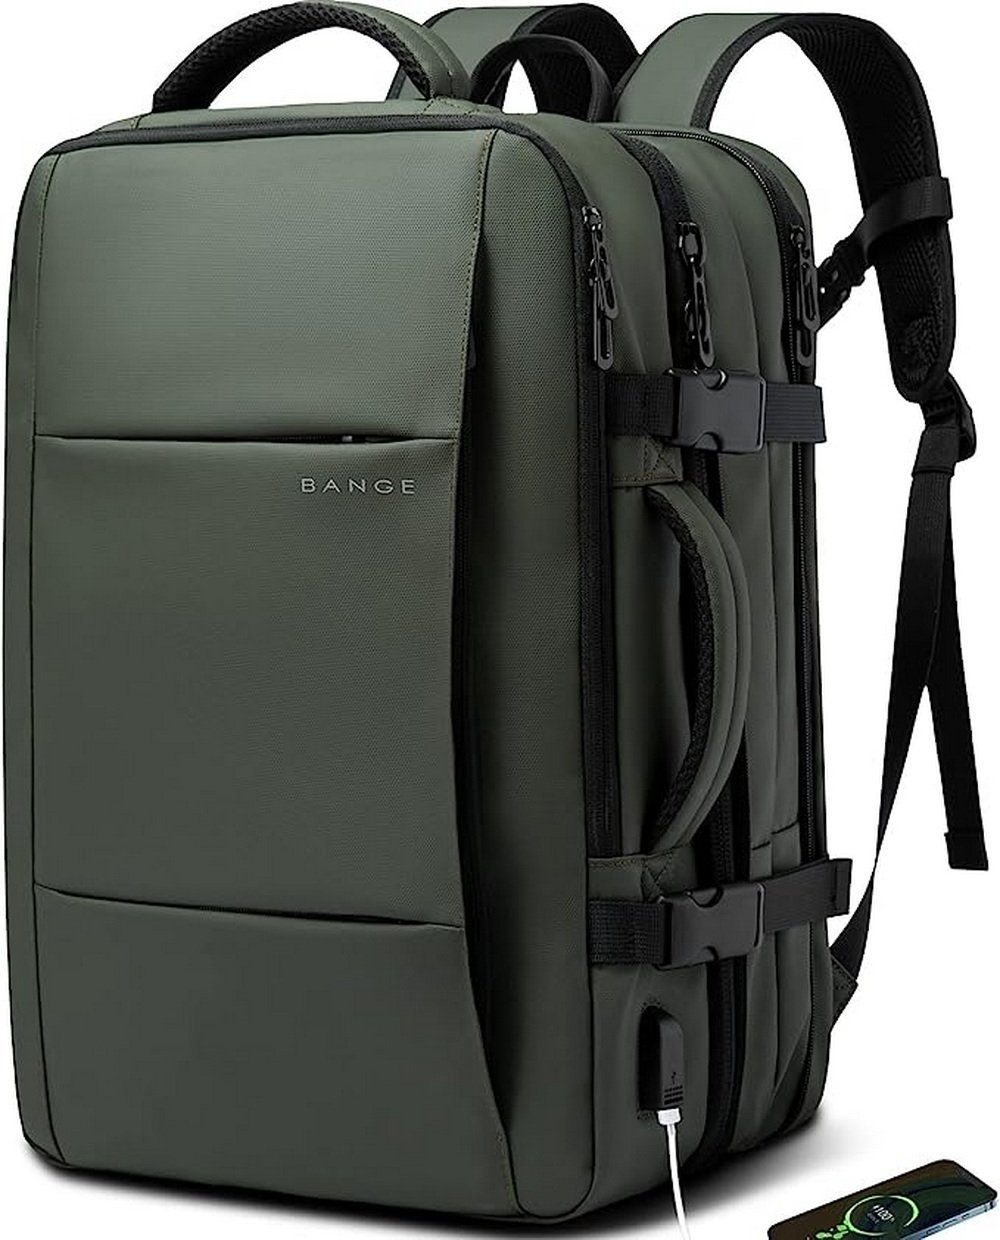 BANGE Reiserucksack TRAVEL Rucksack für Damen und Herren. Laptoprucksack 17,3 Zoll, Mit 15,6-17 Zoll Laptopfach und Tablet/iPad Fach Grün